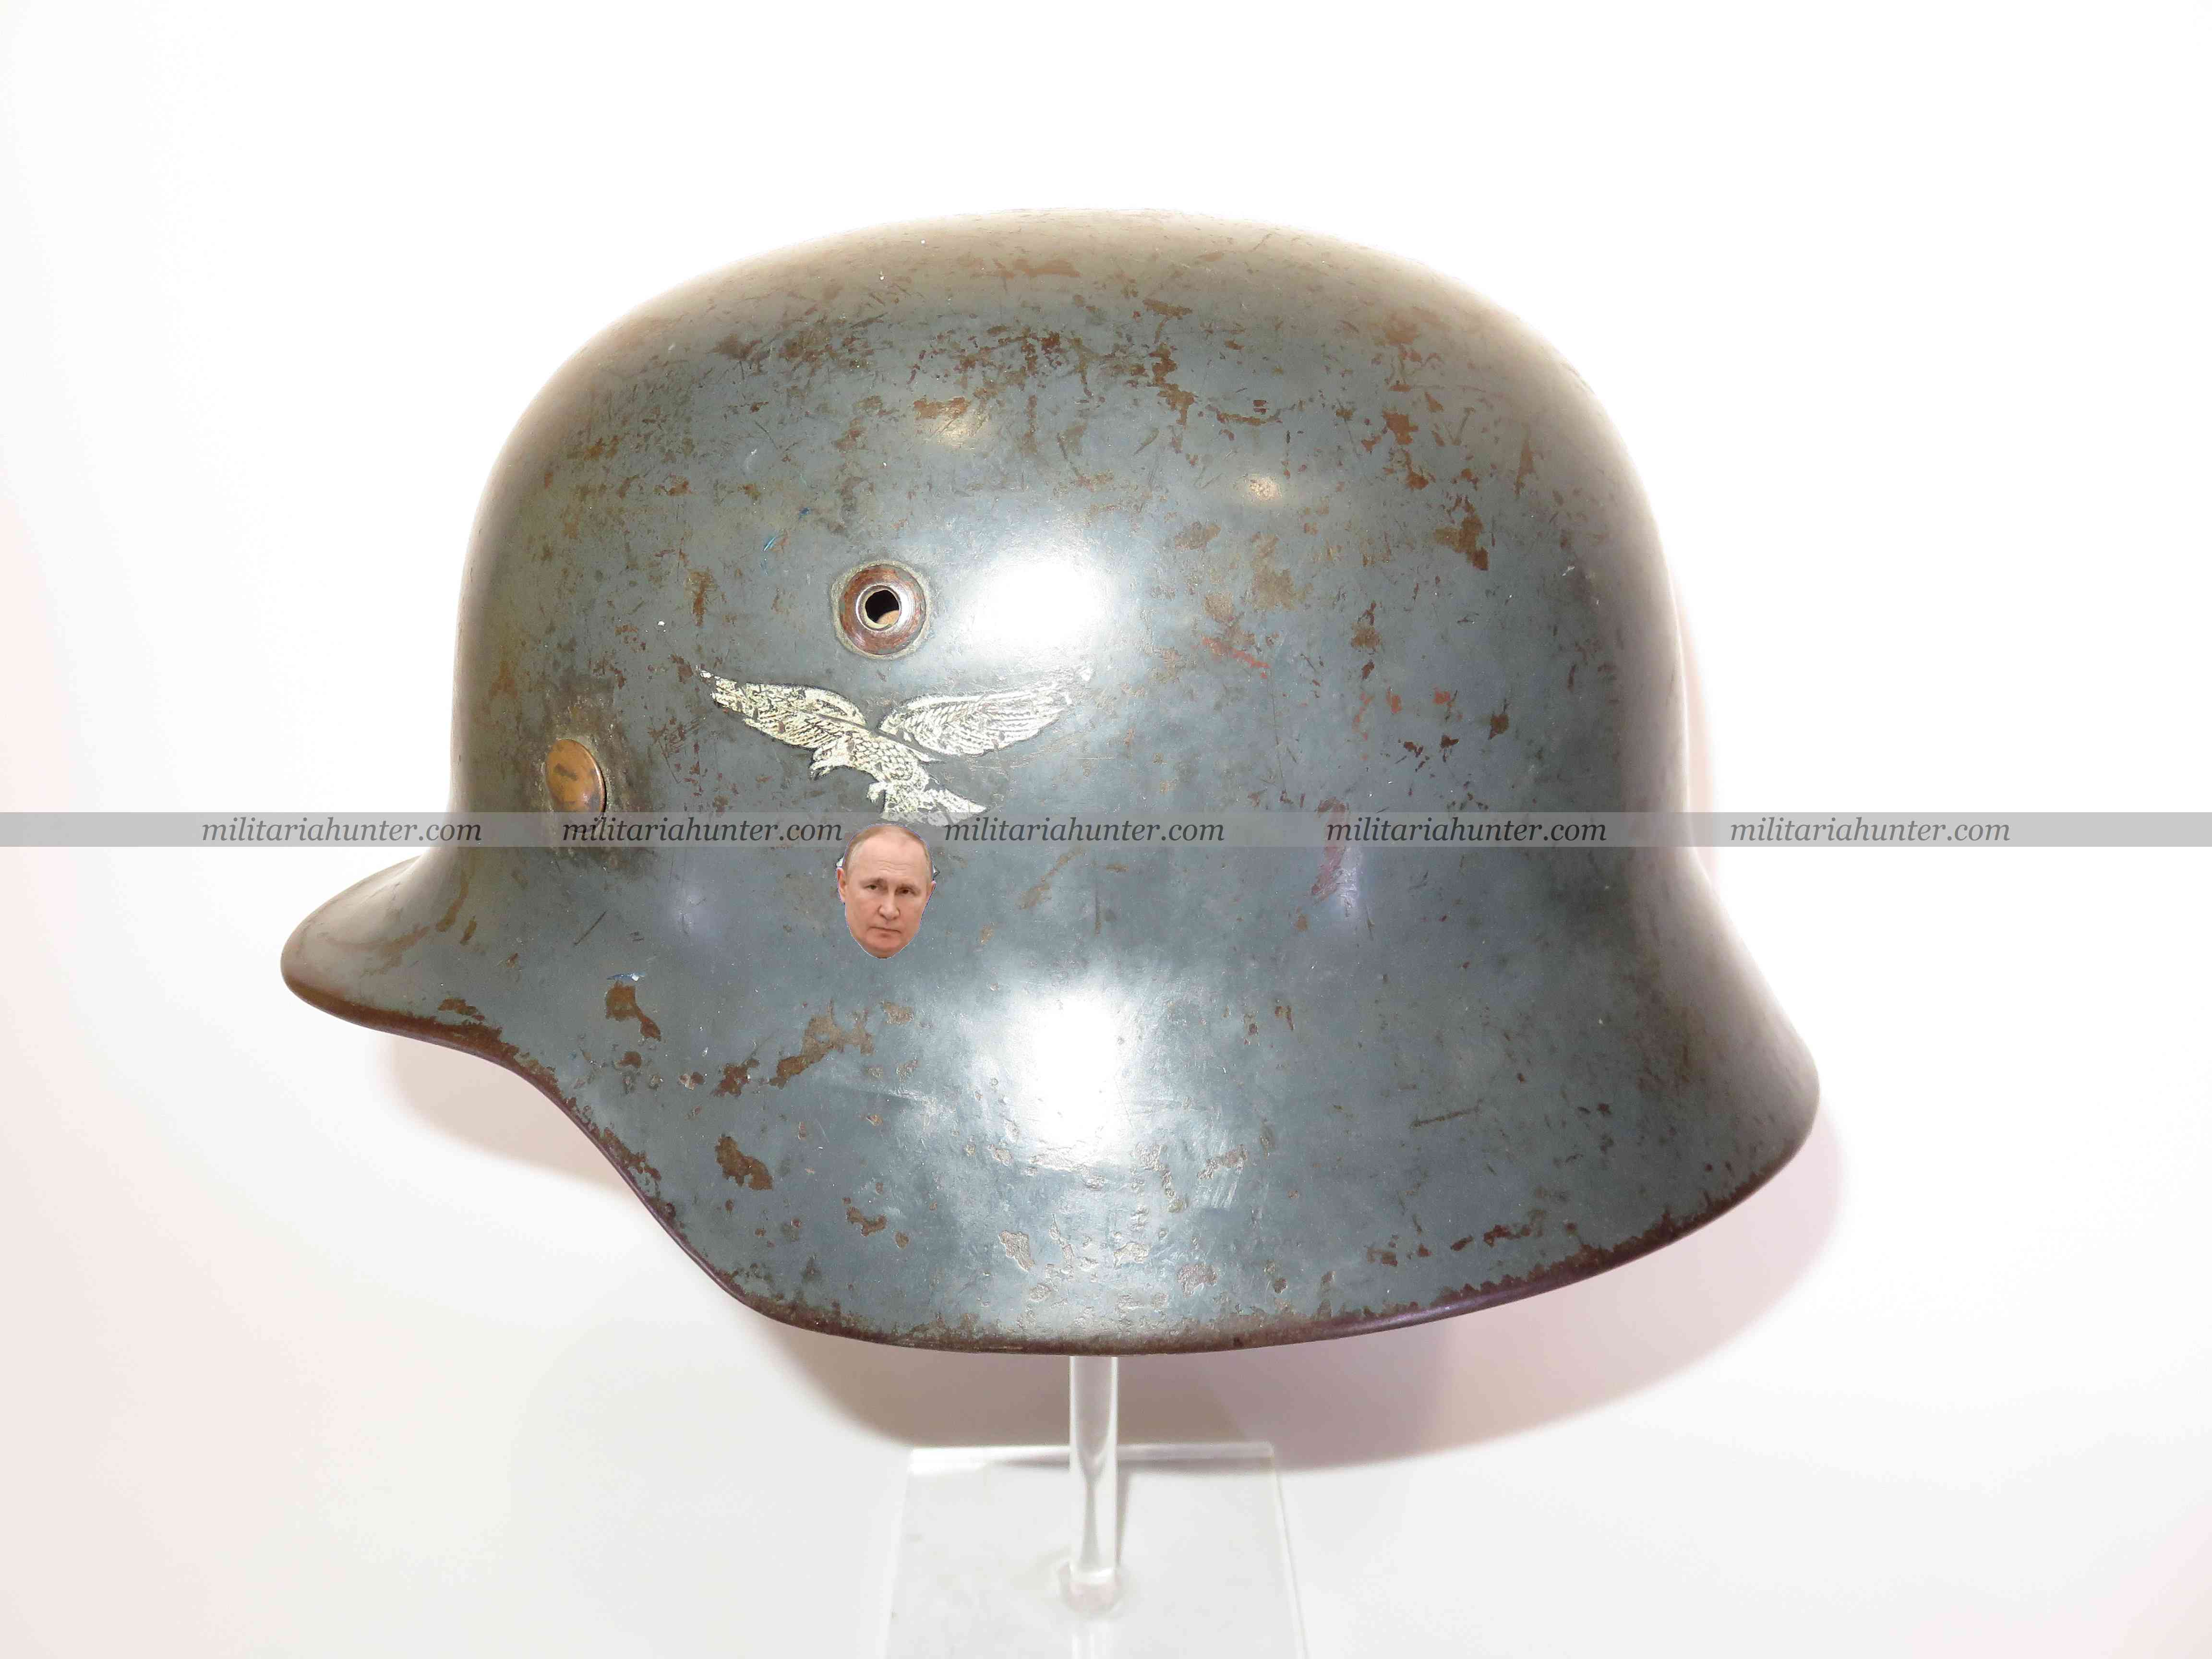 militaria : Casque allemand ww2 Stahlhelm M35 Luftwaffe german helmet SD